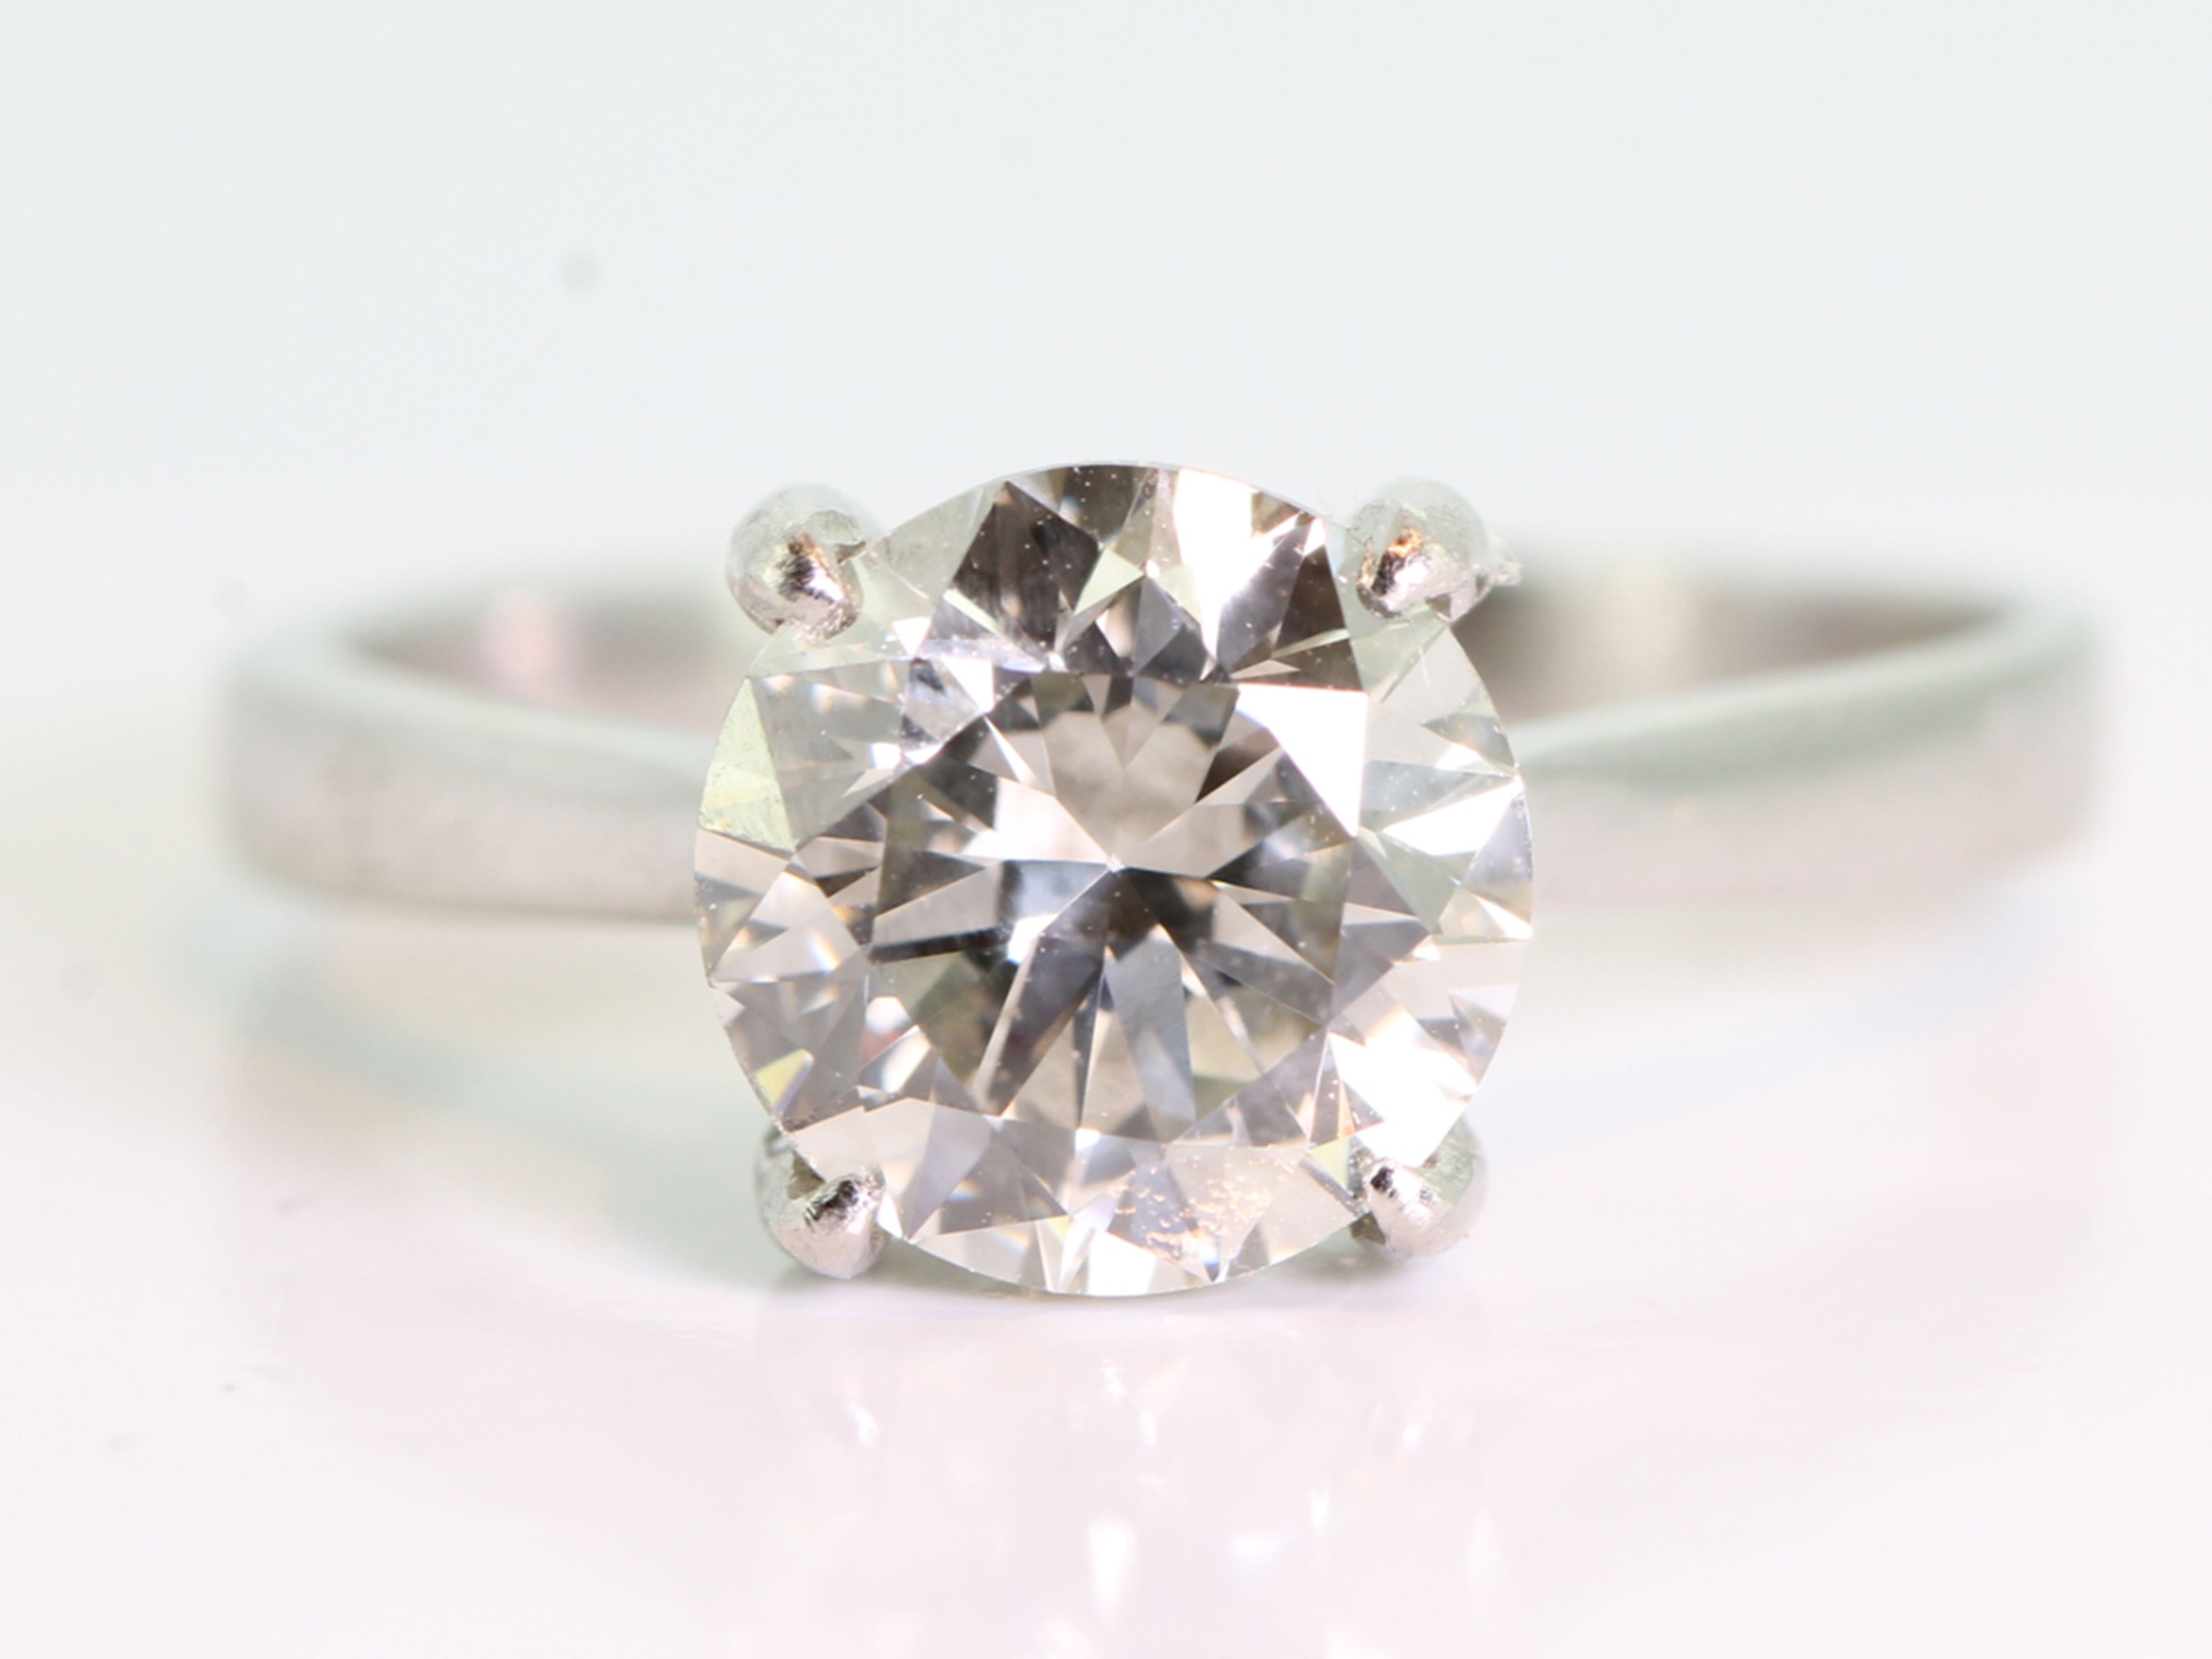 Breathtaking 2.21 carat diamond solitaire platinum ring